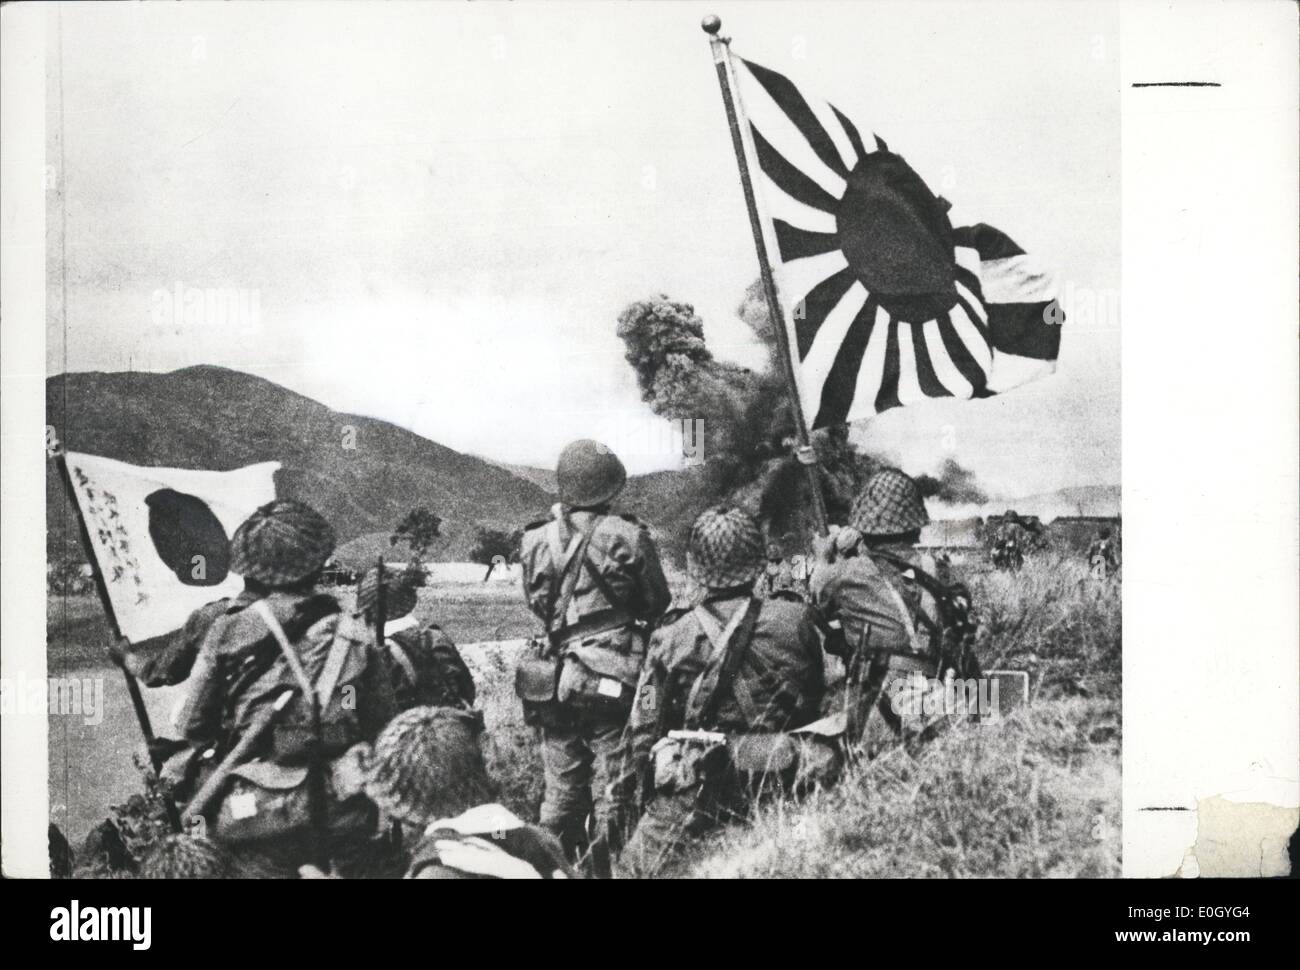 Jan 1, 1940 - La bataille de Bataan - 1939-45 : Marines japonaises comme arrêt d'obus d'Américains de leur position pour ralentir leur avance à Bataan. (Date précise inconnue). Banque D'Images